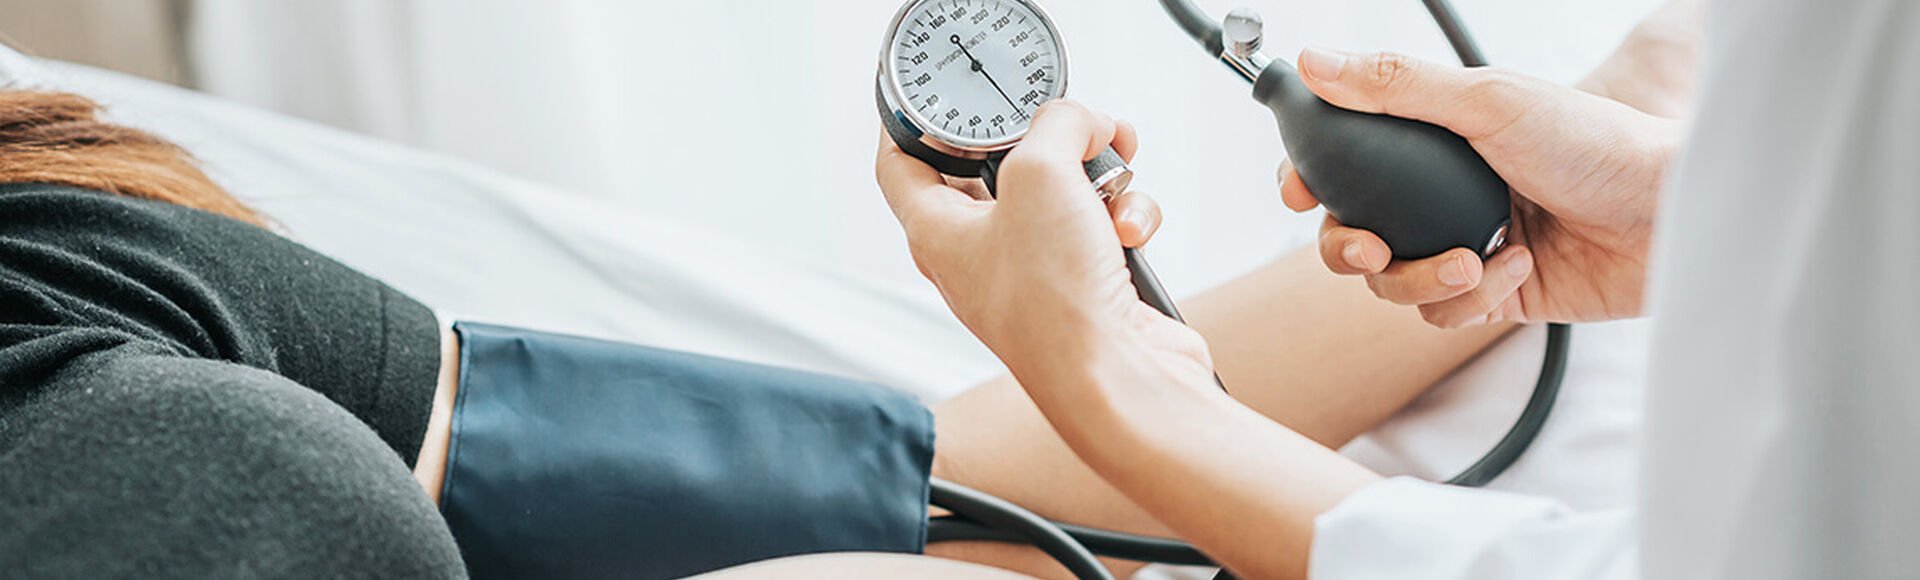 Presión arterial ideal durante tu embarazo  | Más Abrazos by Huggies